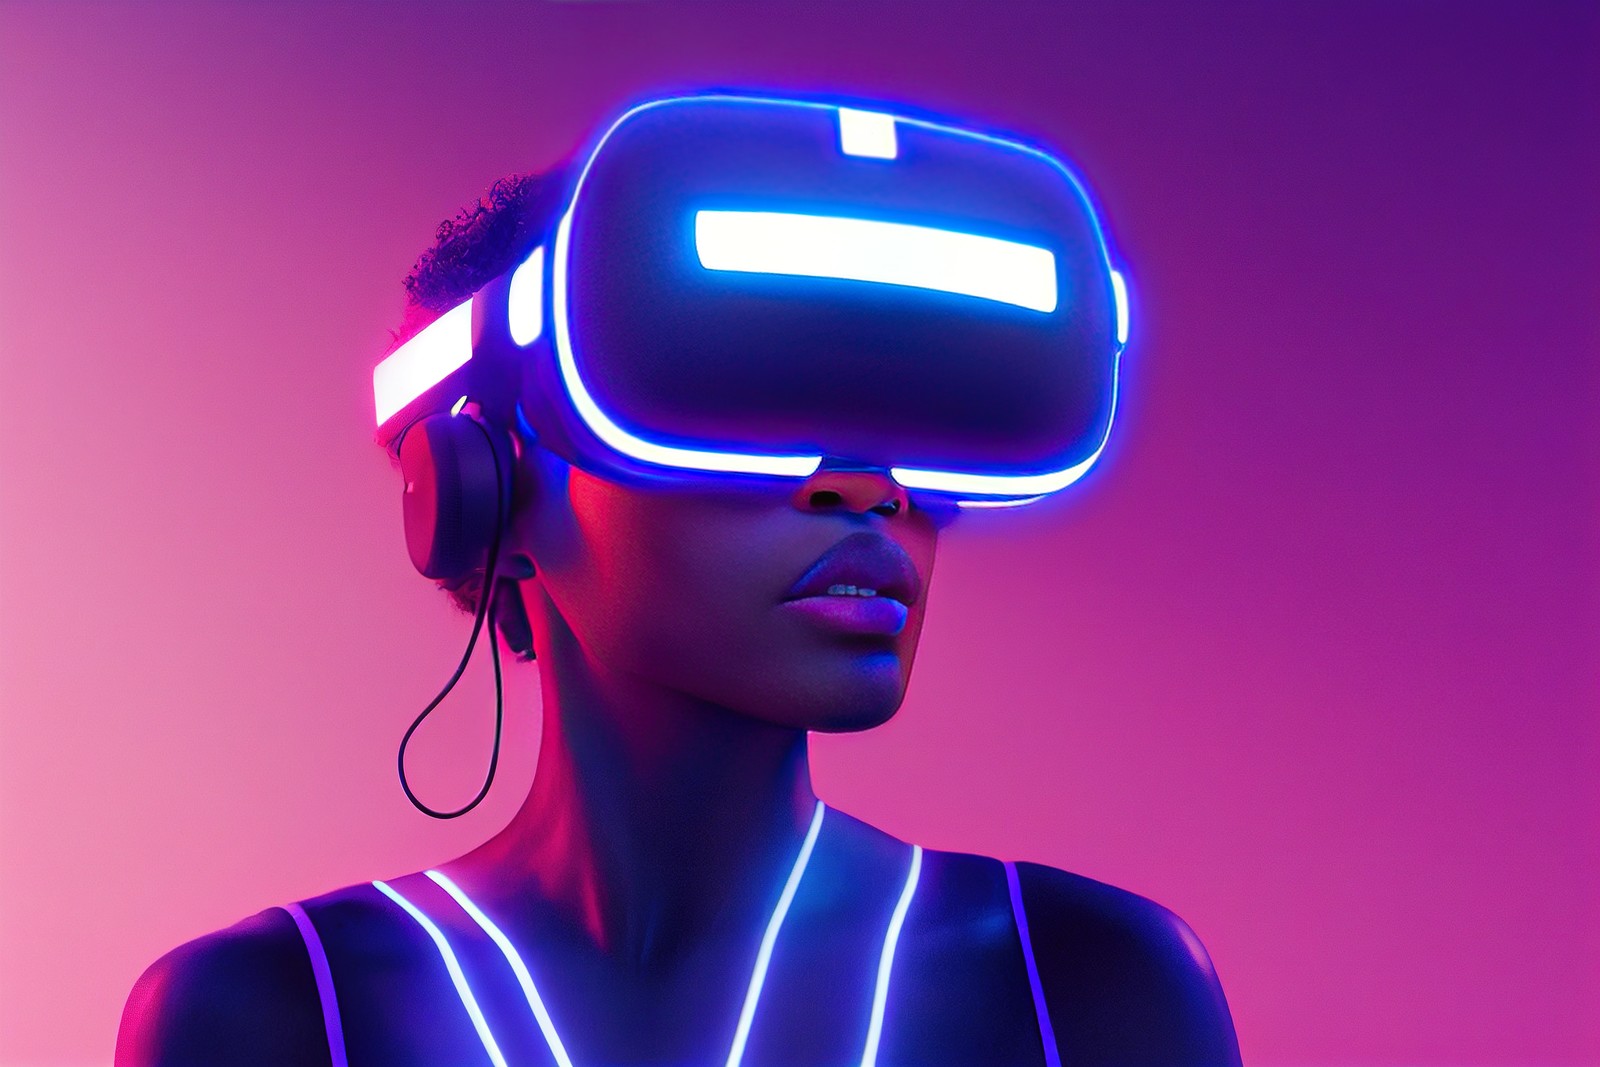 图片展示了一位佩戴着虚拟现实头盔和耳机的女性，身体轮廓发光，背景为紫色渐变，科技感十足。